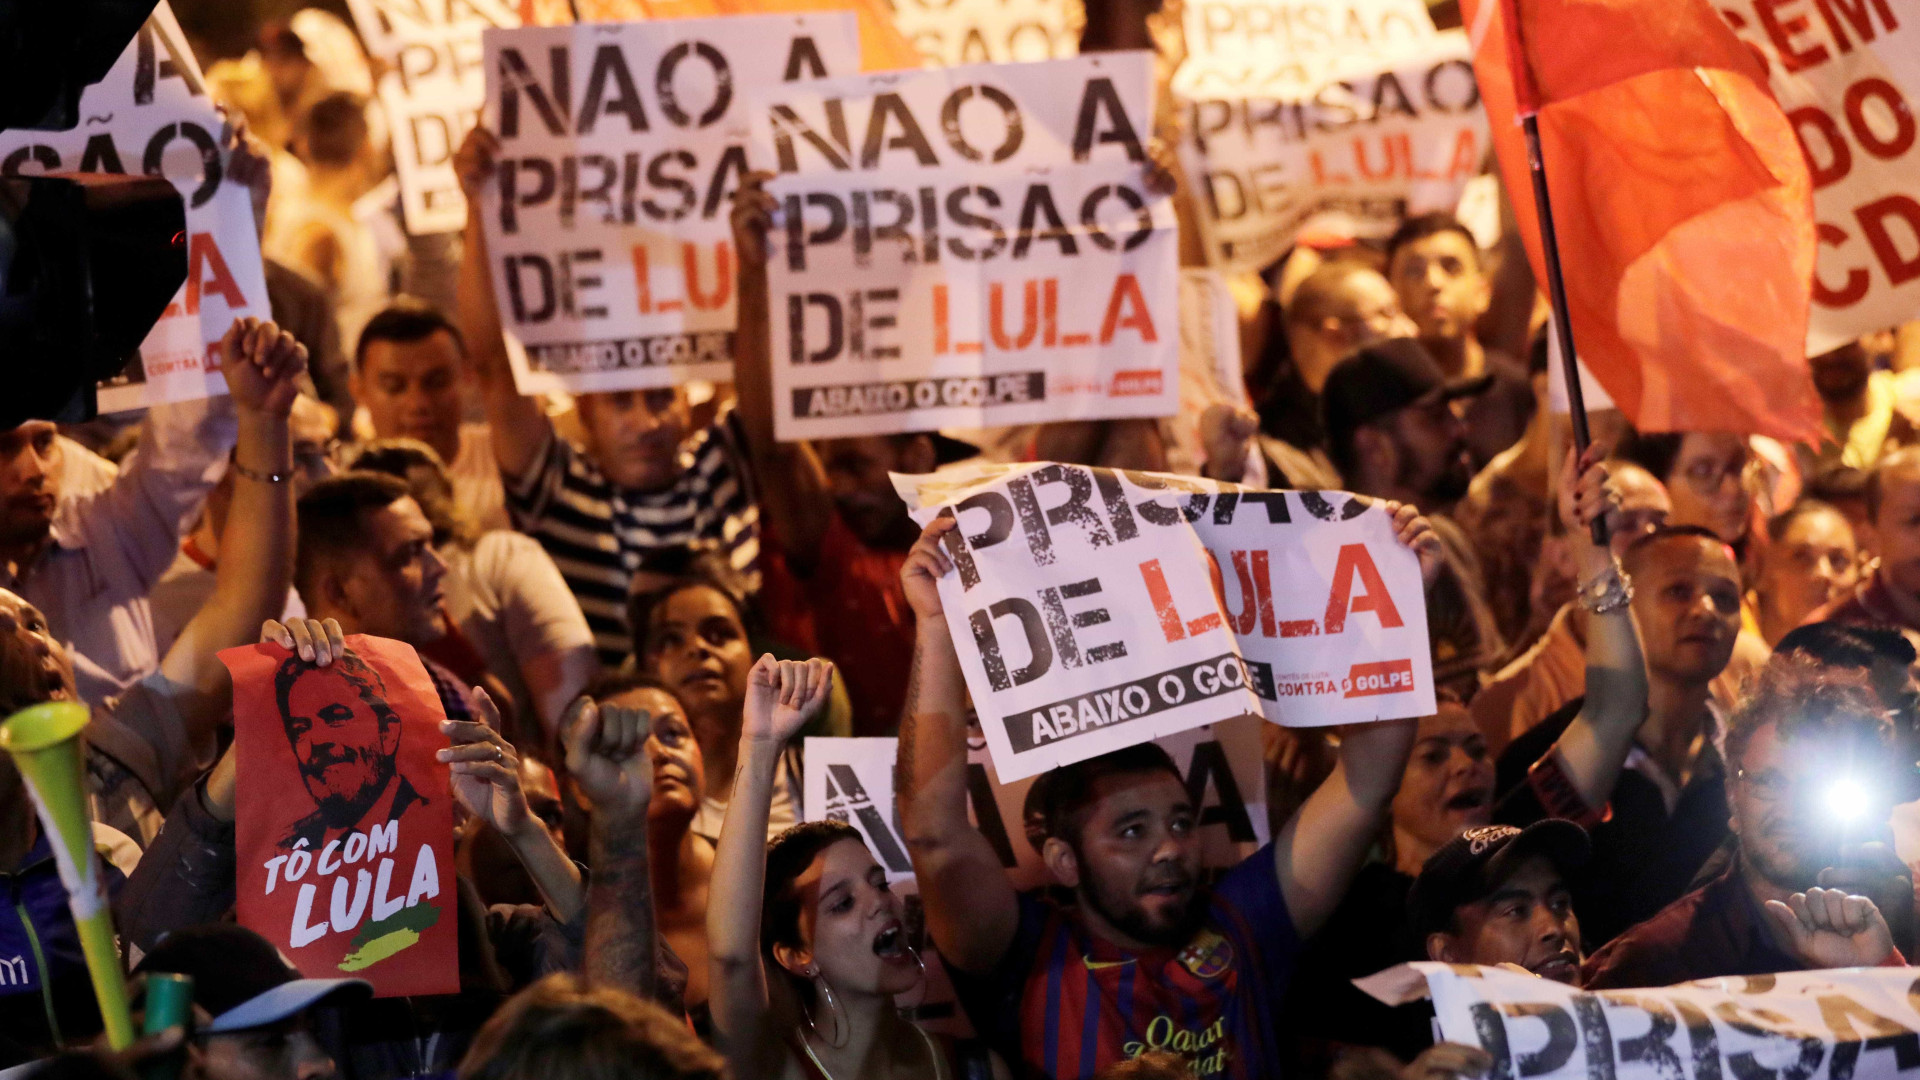 Ex-presidente Lula entra com novo pedido de habeas corpus